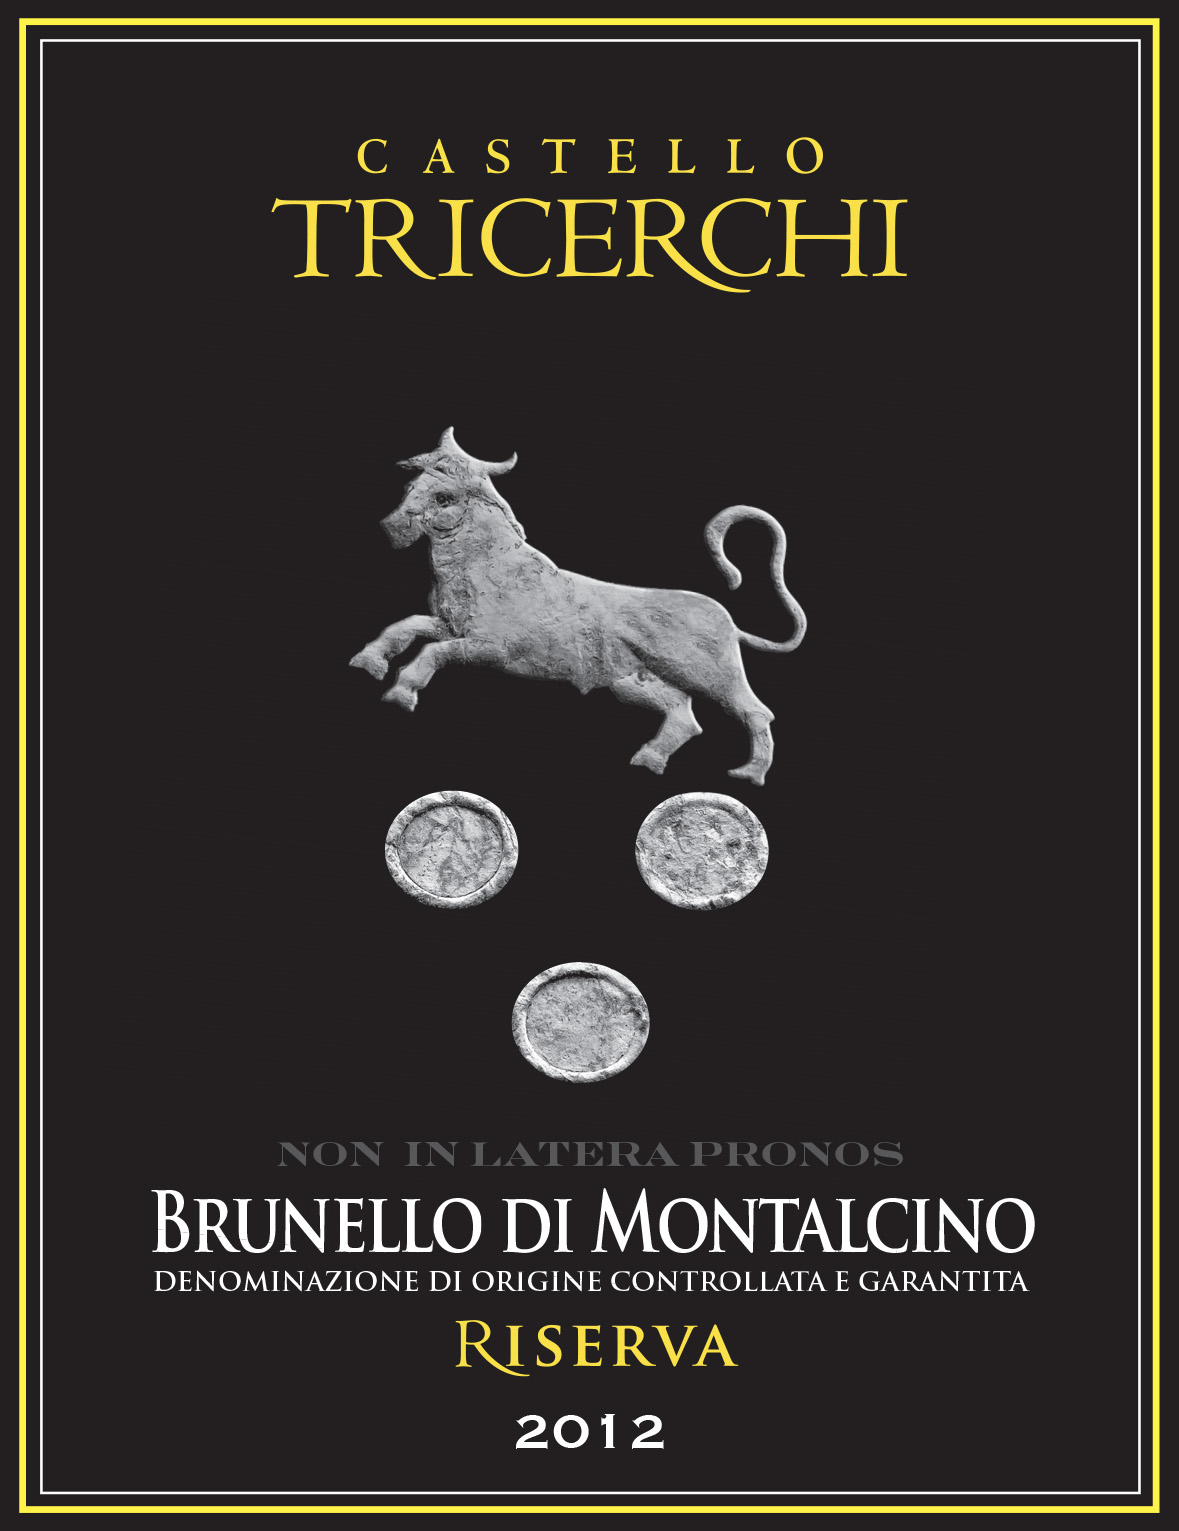 https://www.skurnik.com/wp-content/uploads/2012/07/brunello-di-montalcino-riserva-castello-tricerchi-2.jpg